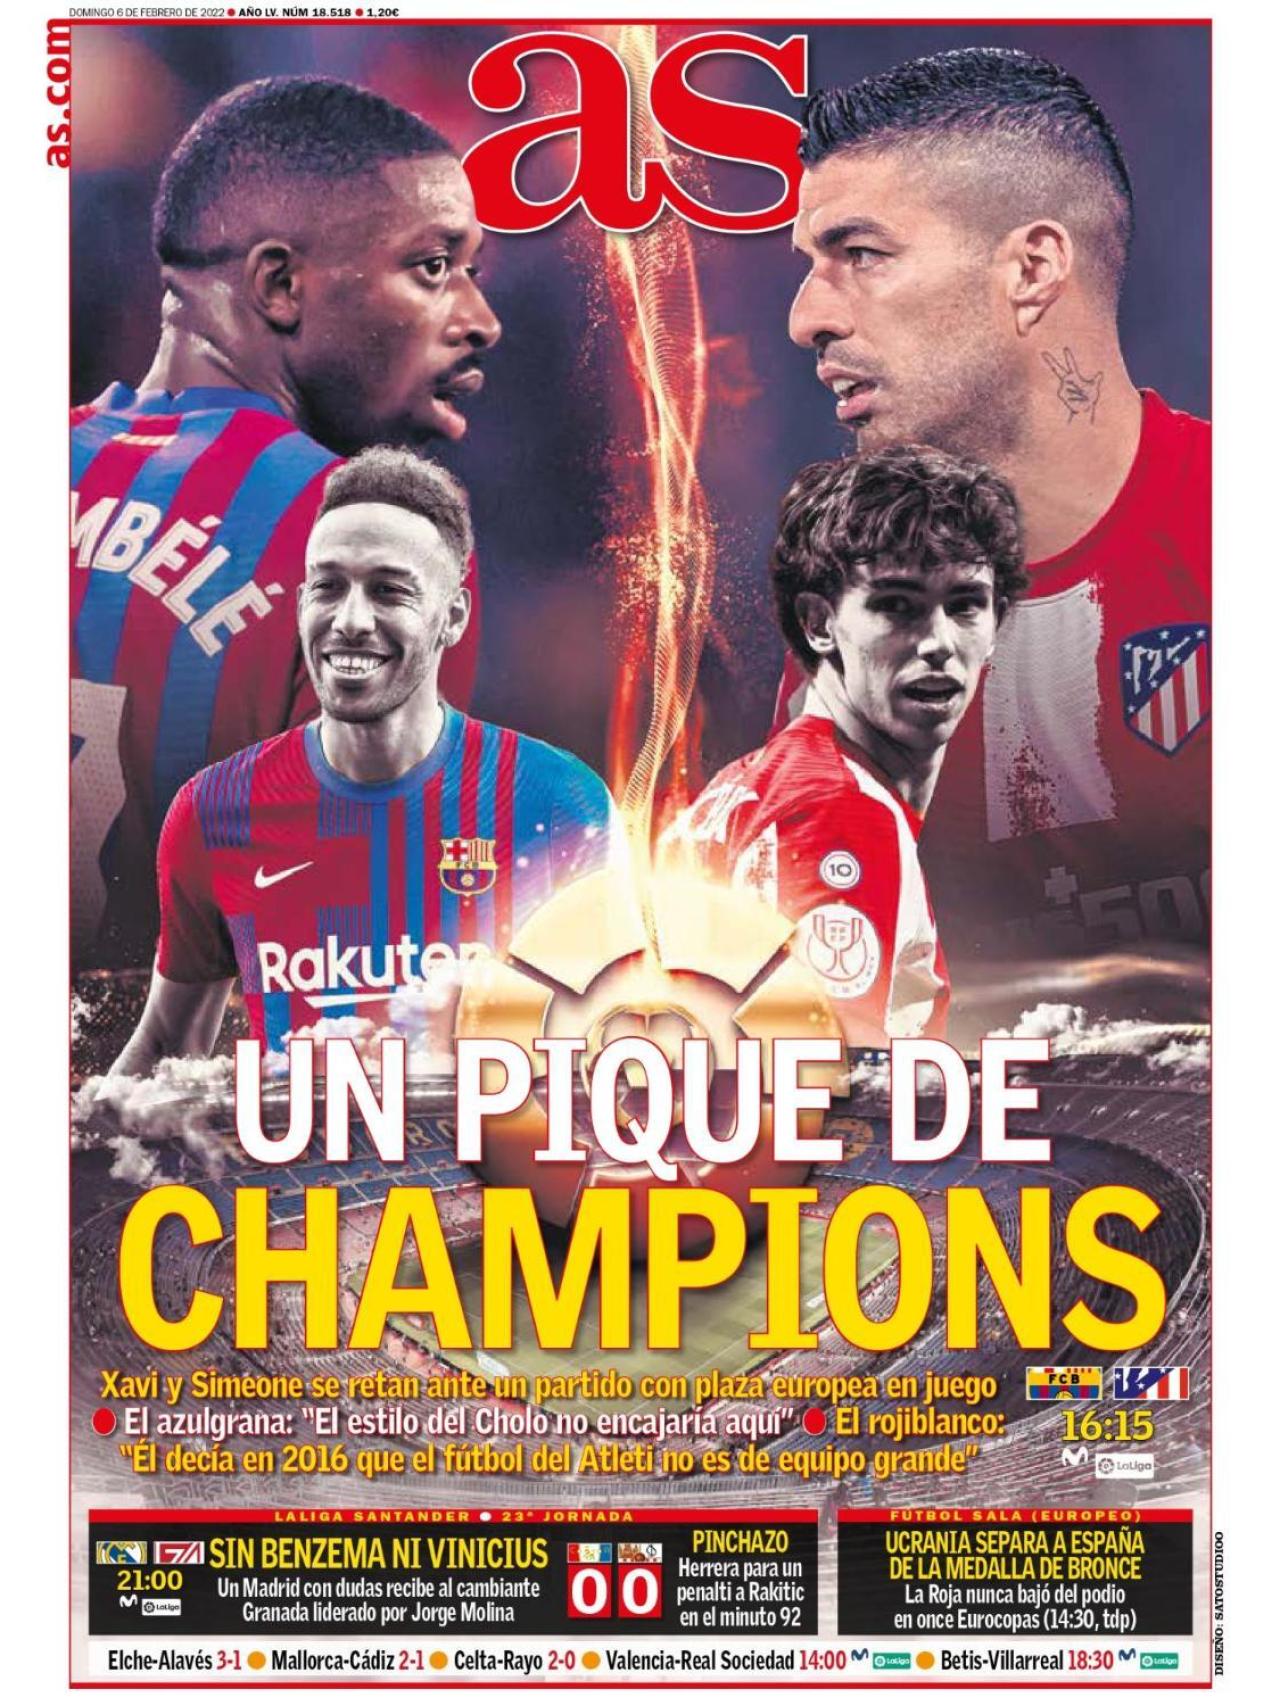 La portada del diario AS (06/02/2022)